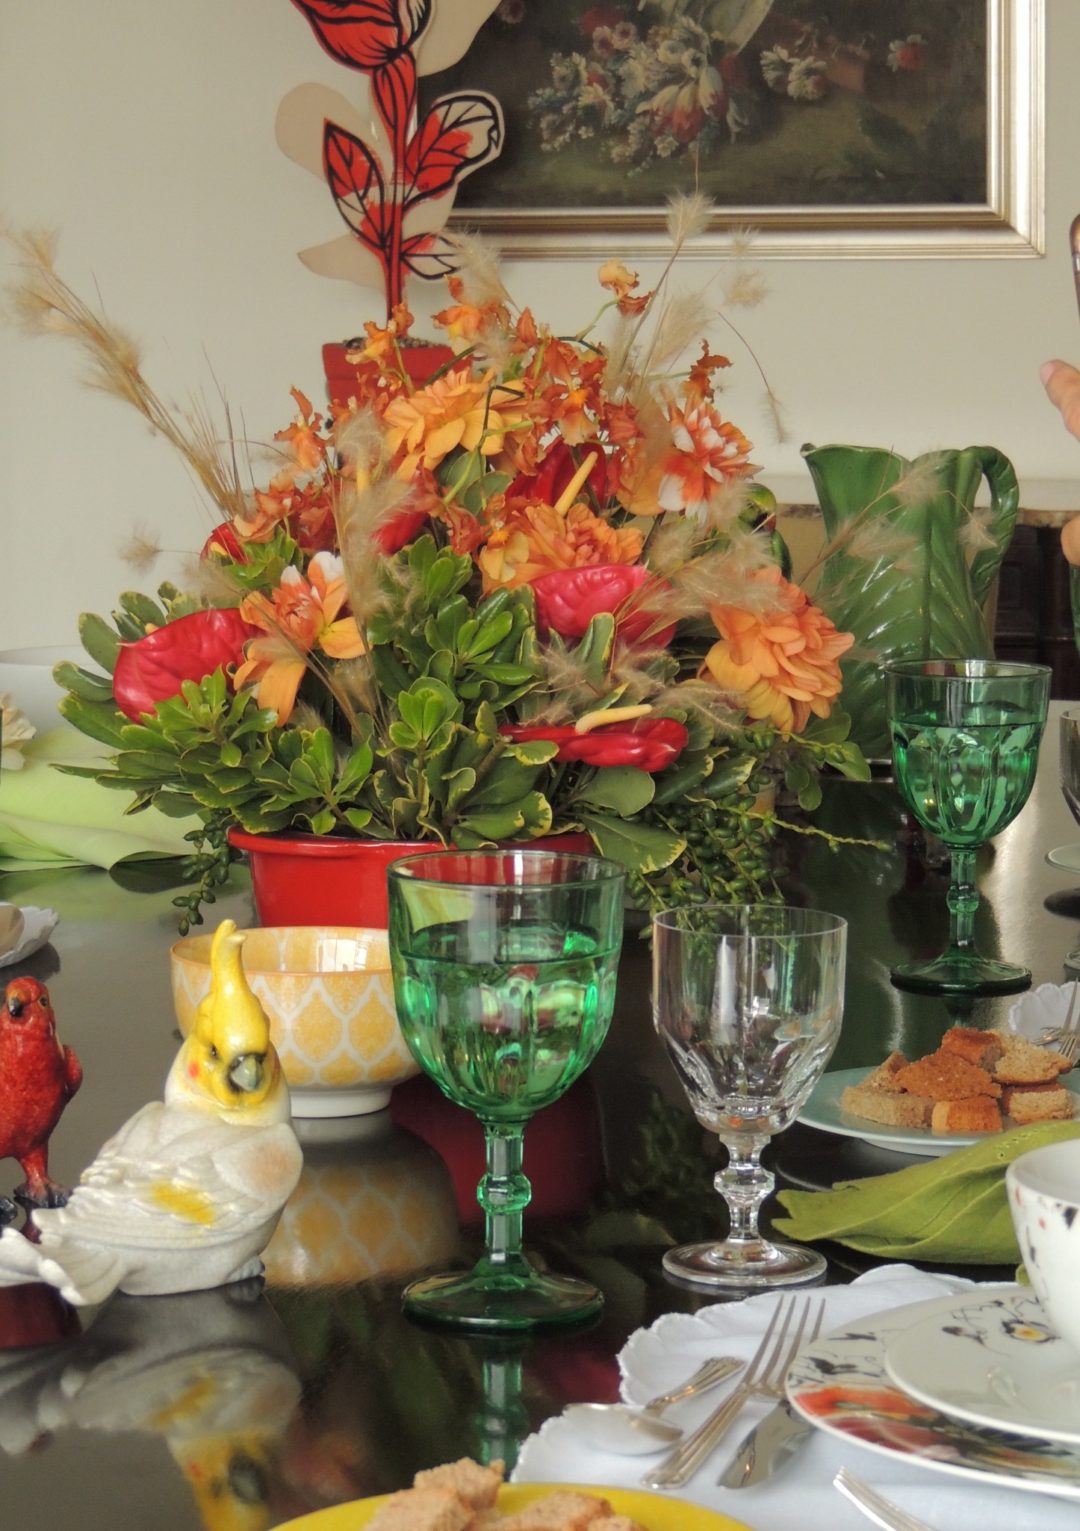 Mesa de jantar montada , com todos os utensilios e acessórios. Flores ao centro na cor branca e laranja. Algumas taças estão em detalhe - a taça de água em tom verde e a taça de vinho branco, em cristal transparente. Como decoração muitos pássaros, araras, papagaios em porcelanas estão em volta do vaso de flores